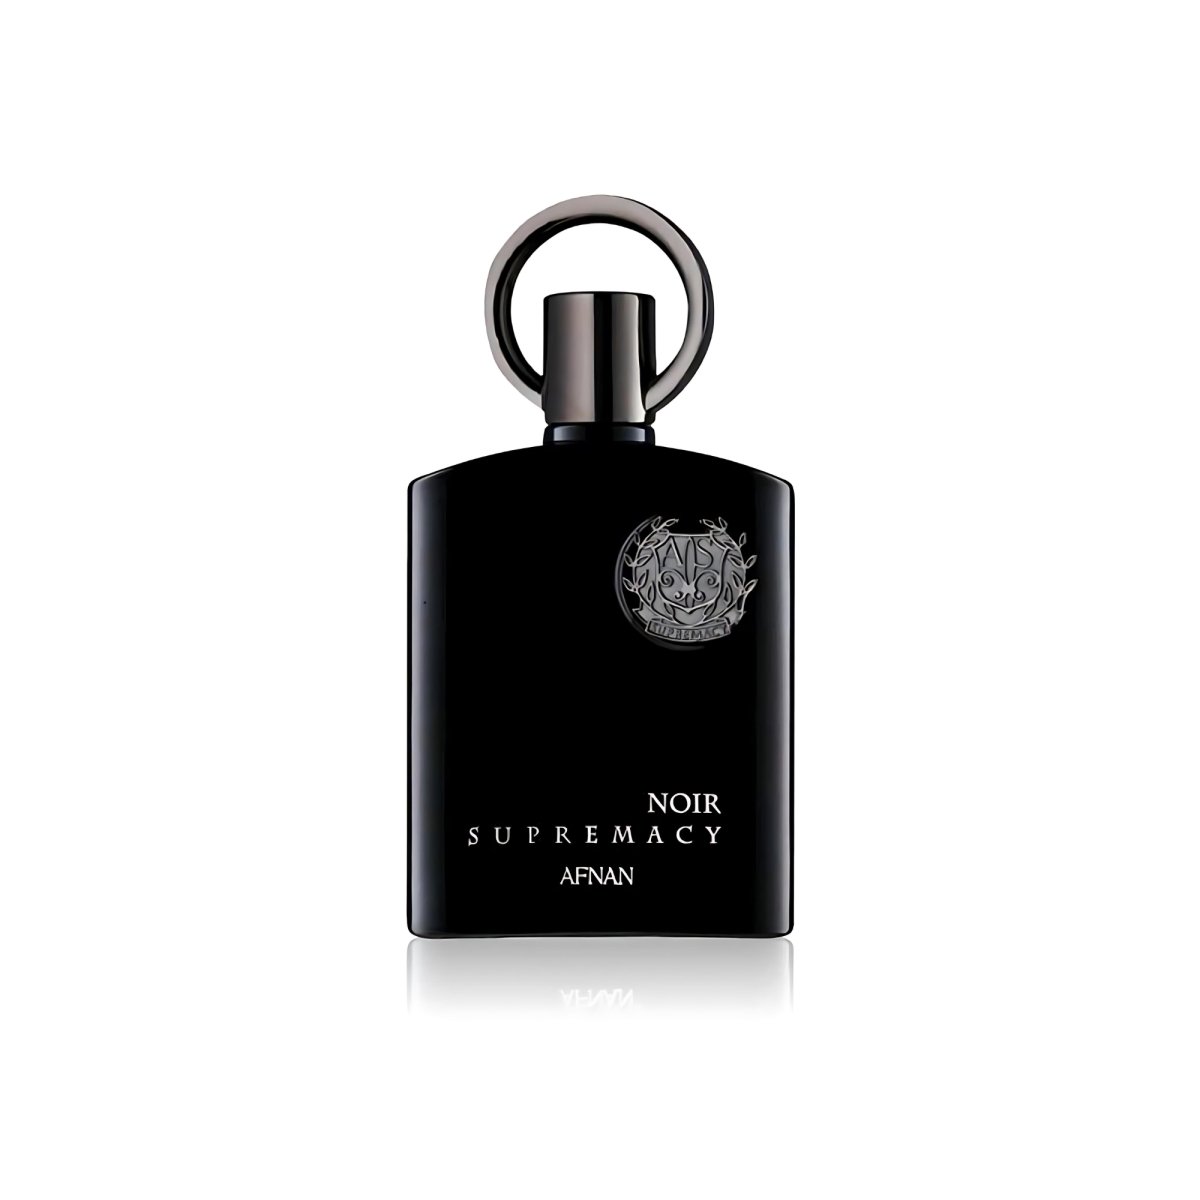 Supremacy Noir - Afnan - 3.4 oz - Eau de Parfum - Fragrance - 6290171001614 - Fragrance